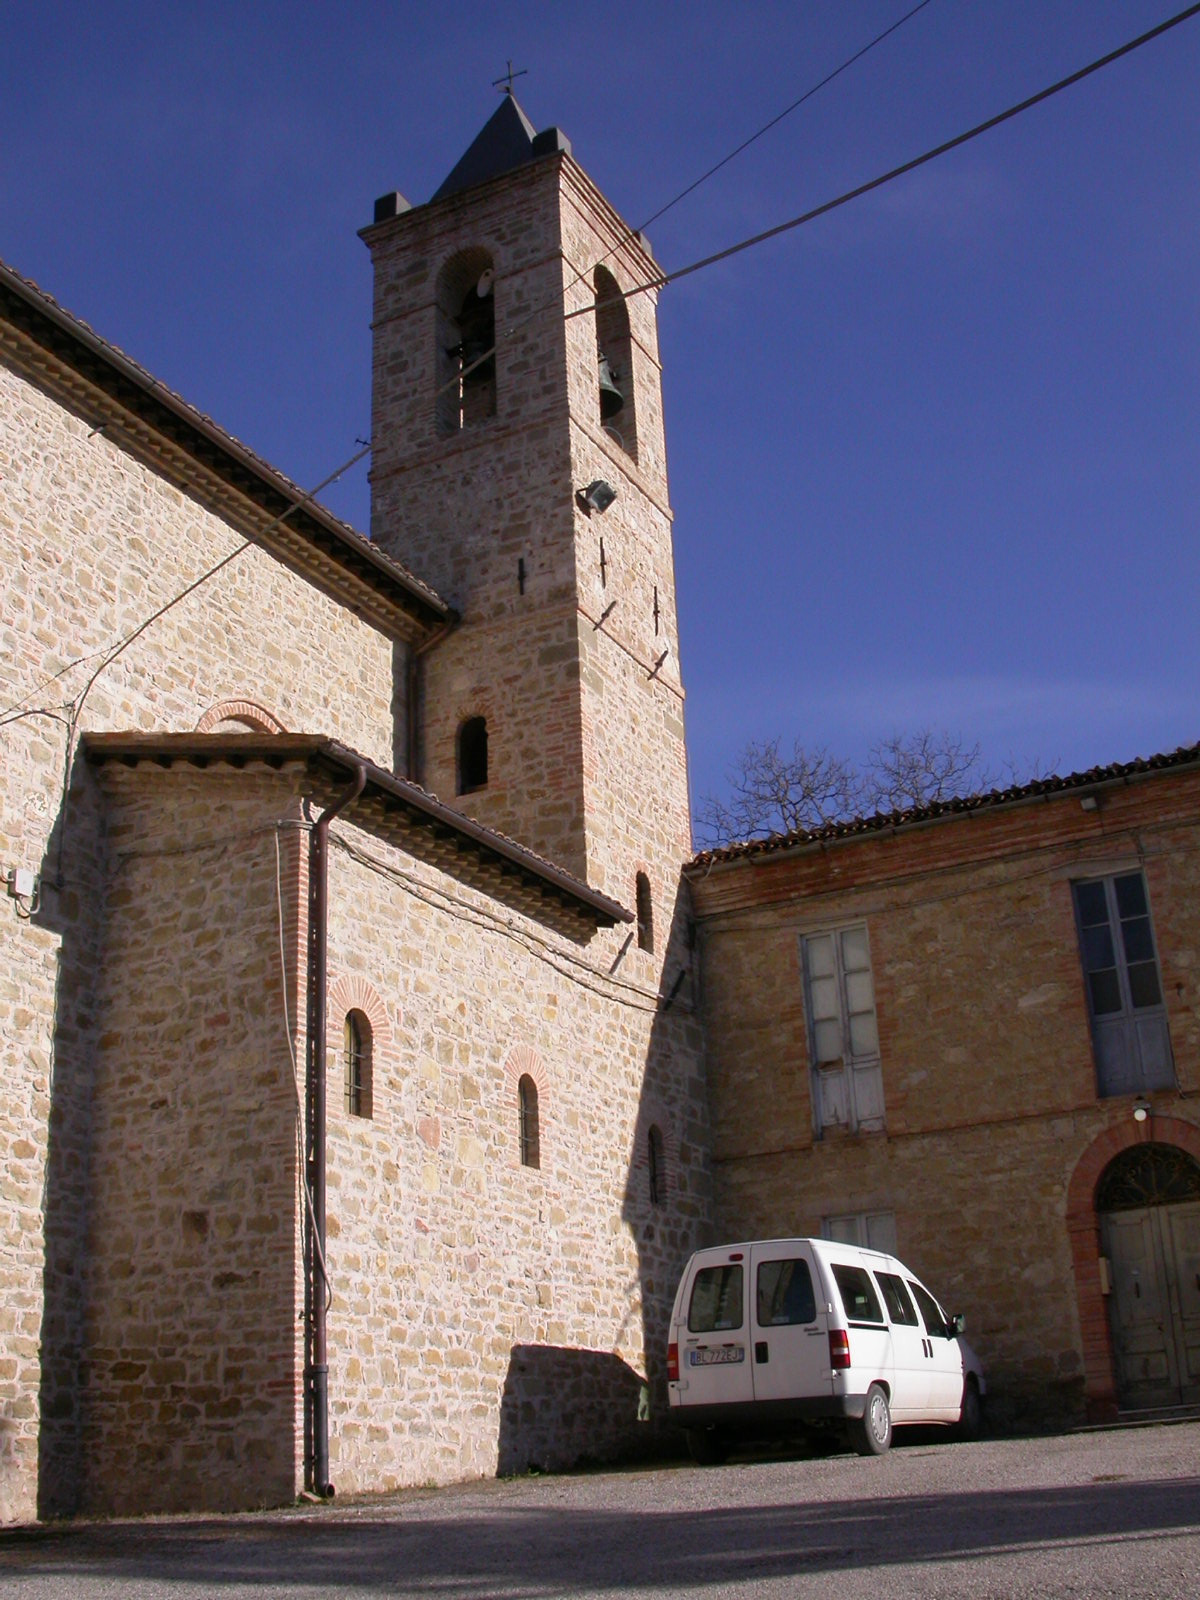 Campanile della Chiesa di S. Maria a Corte (campanile) - Roccafluvione (AP) 